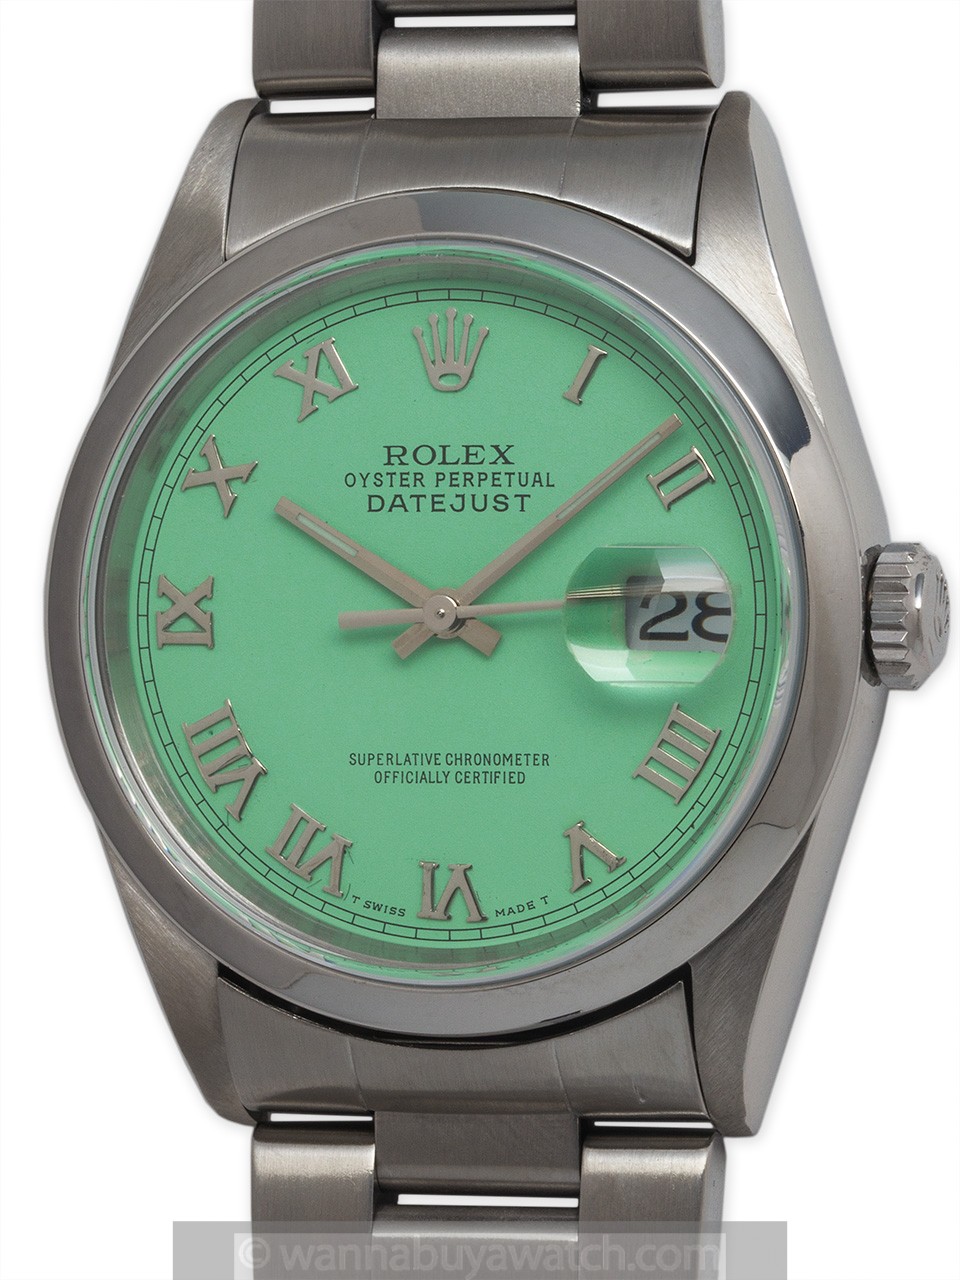 Rolex SS Datejust circa 2000 “Mint Green”